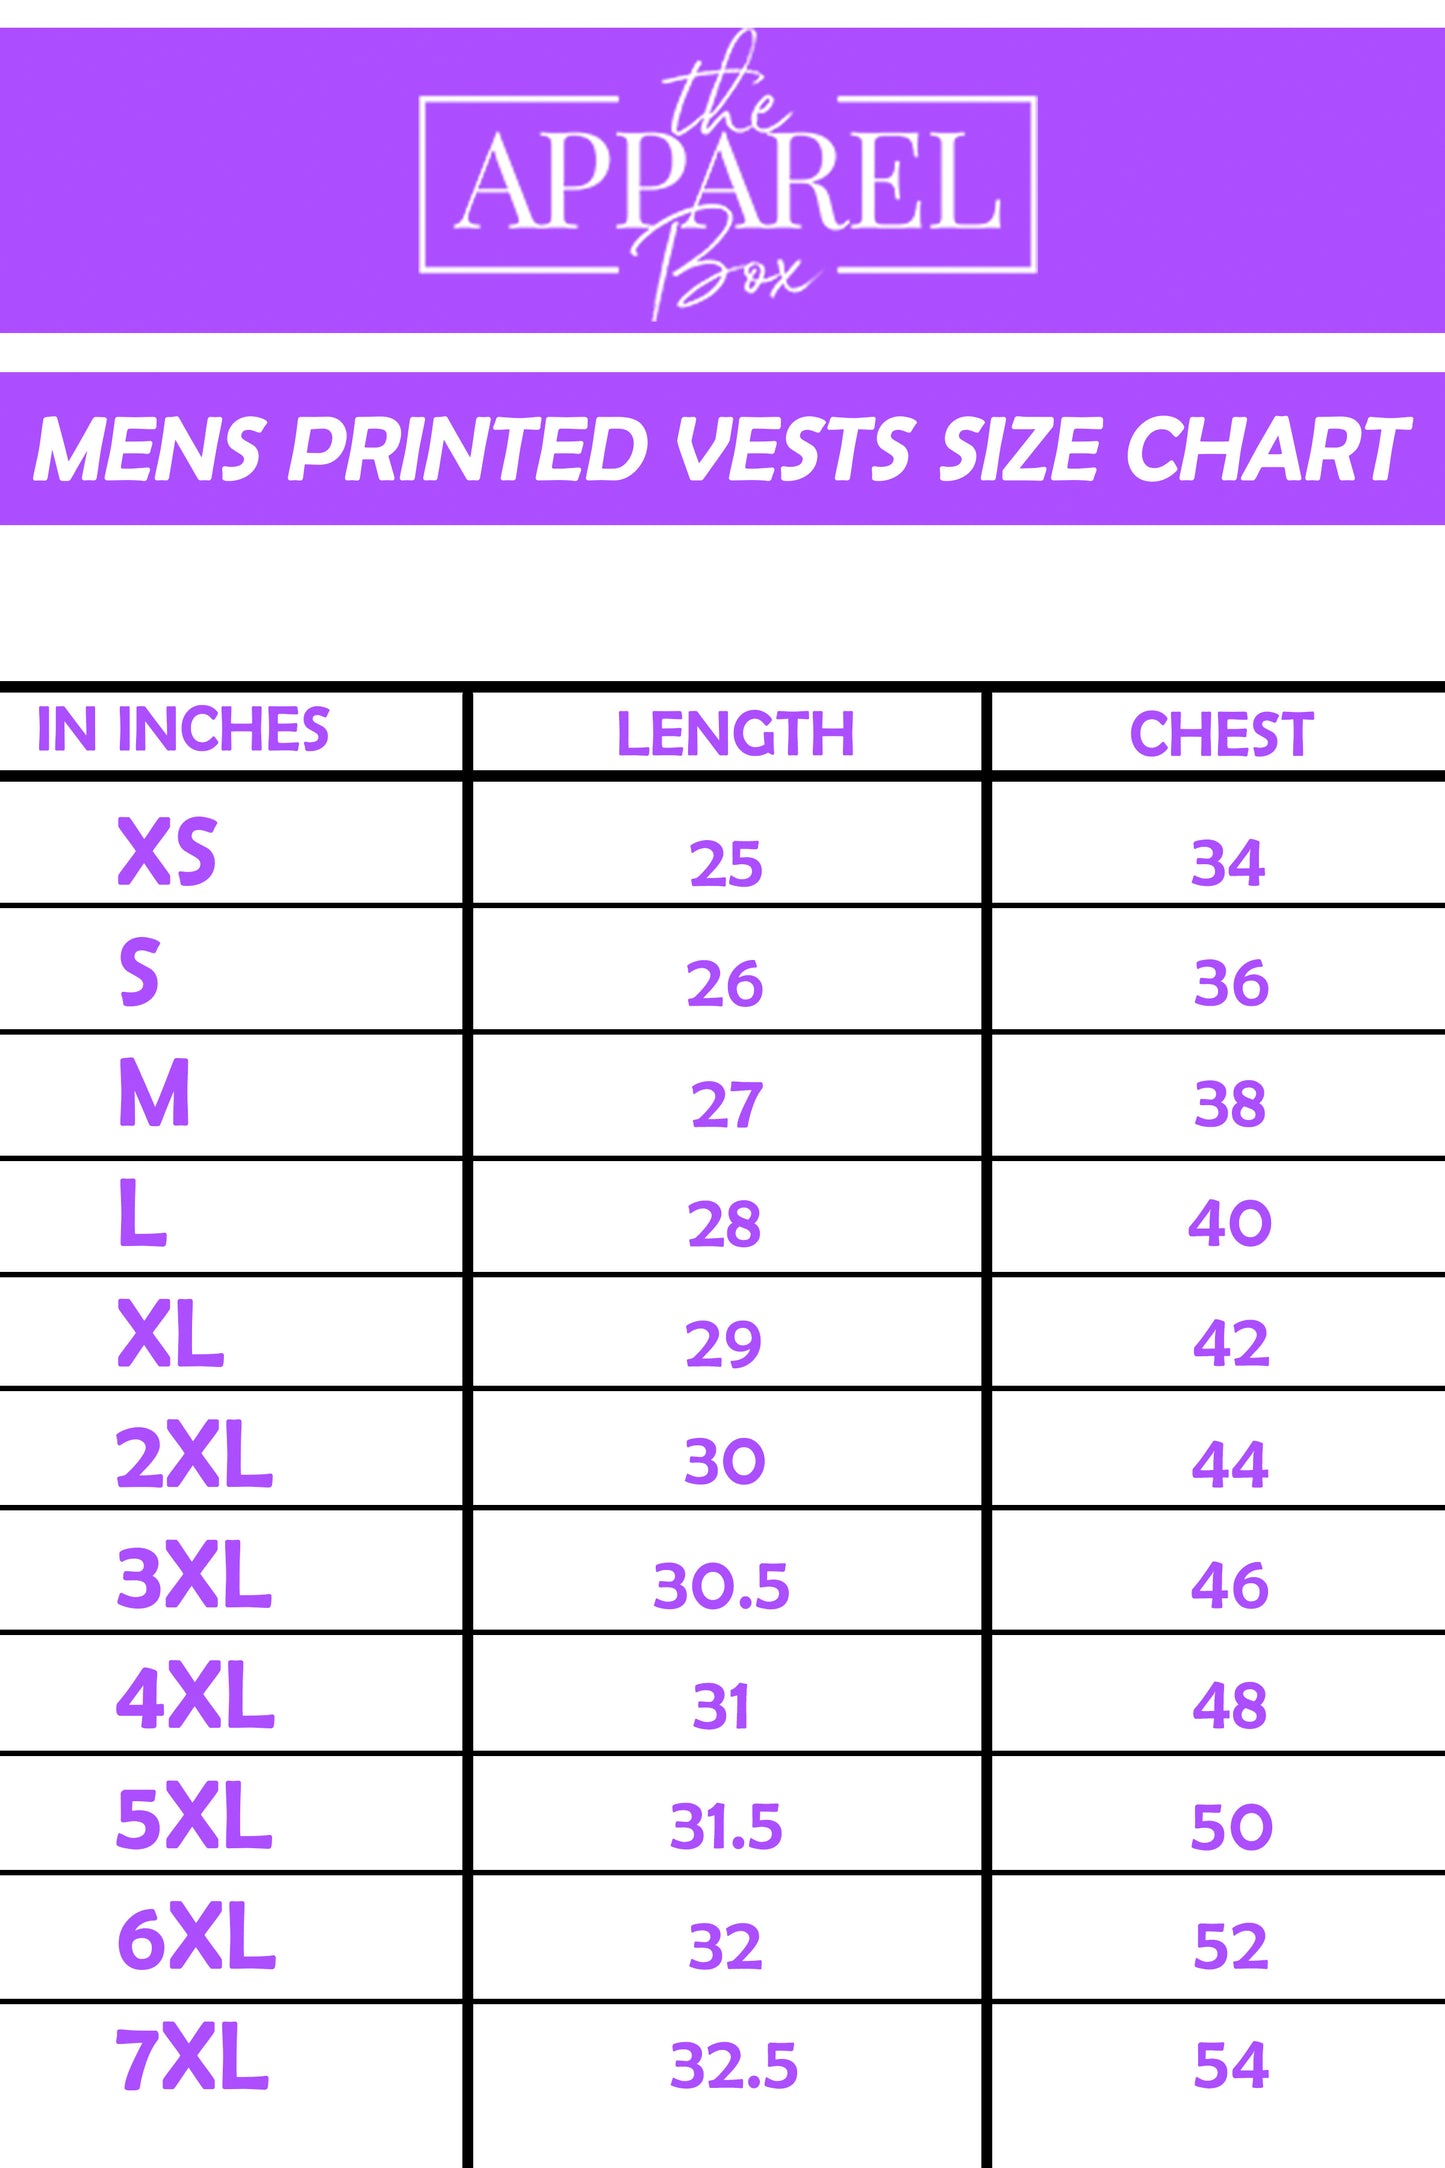 Printed Vest#16